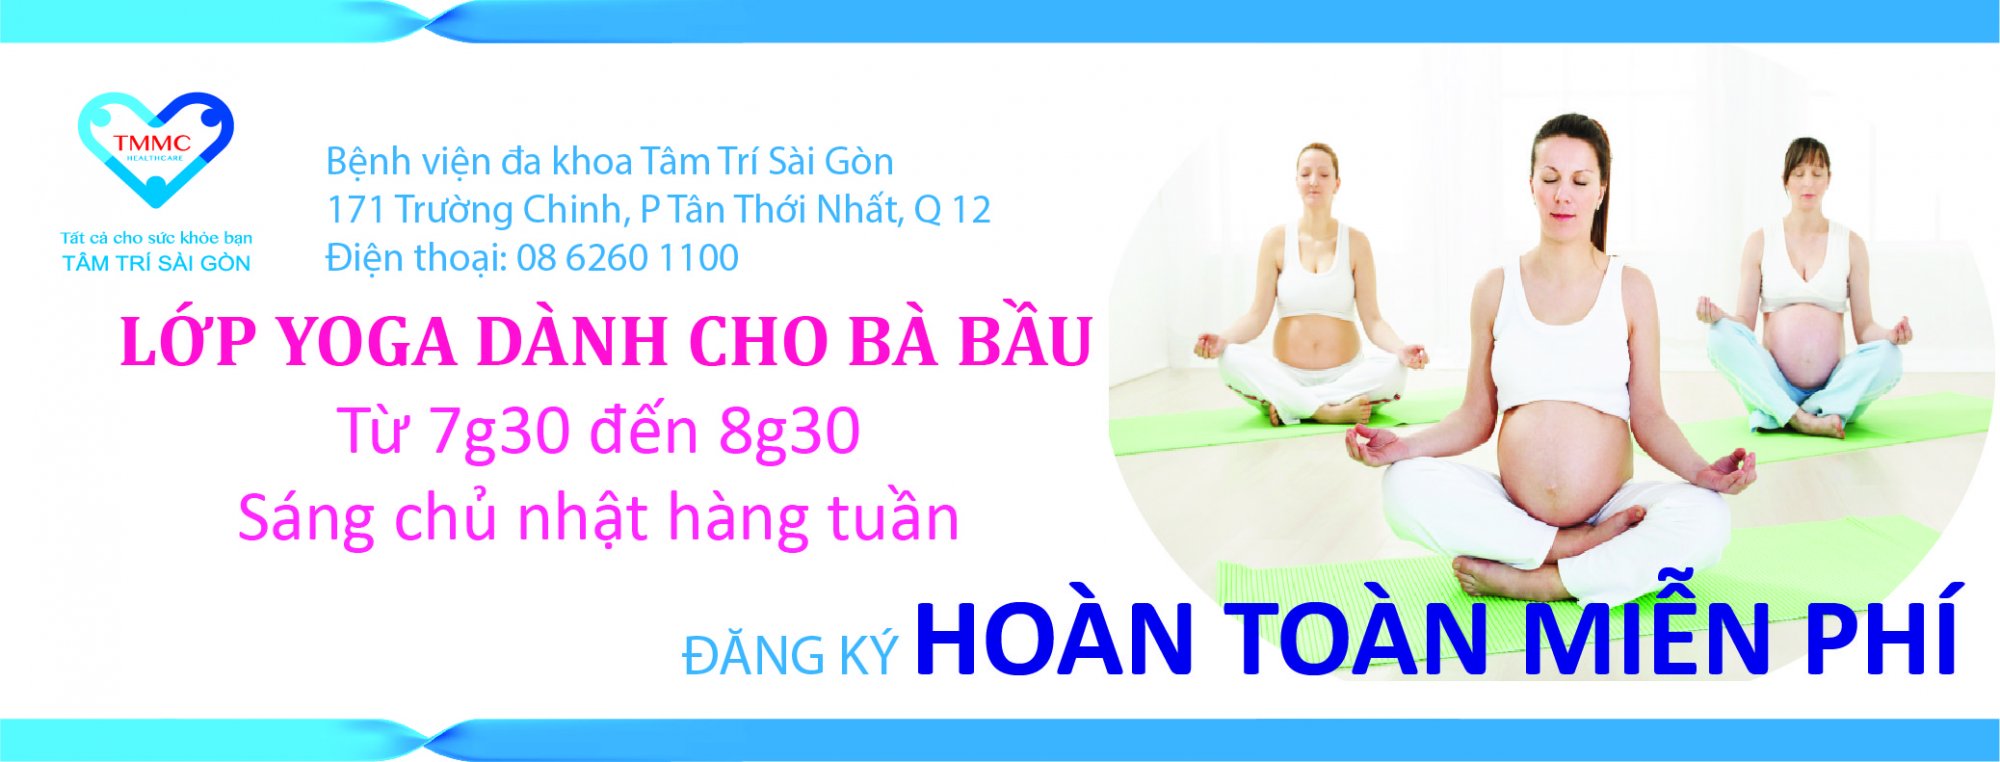 Banner_Yoga_cho_ba_bYu_1